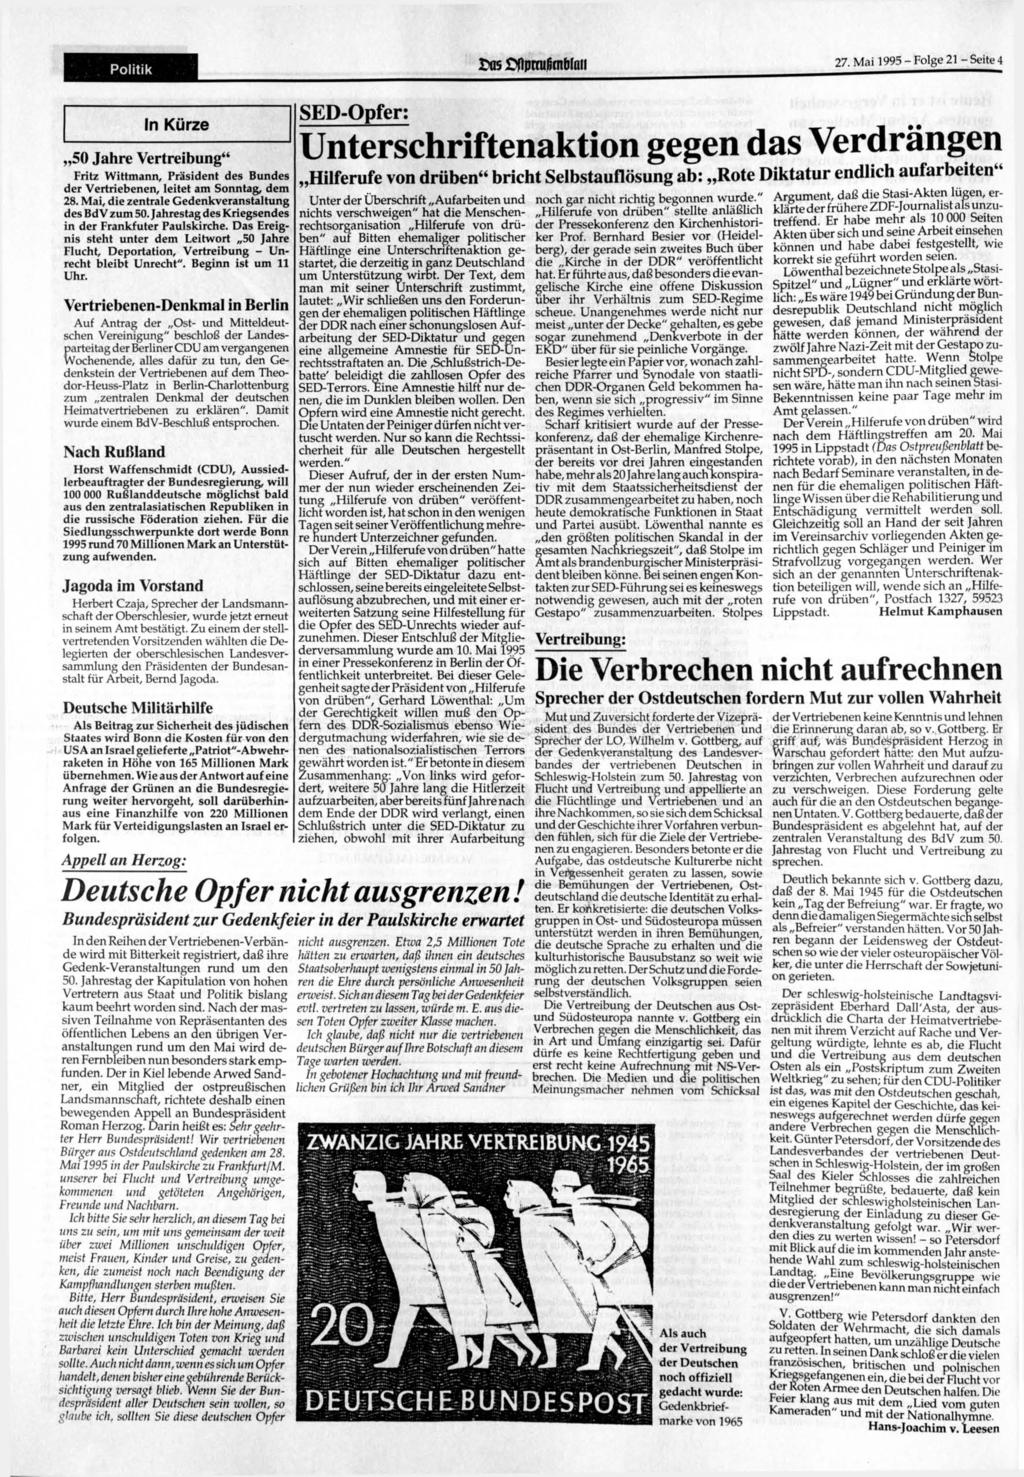 Politik ttk flpraißmwaii 27. Mai 1995 - Folge 21 - Seite 4 In Kürze 50 Jahre Vertreibung" Fritz Wittmann, Präsident des Bundes der Vertriebenen, leitet am Sonntag, dem 28.